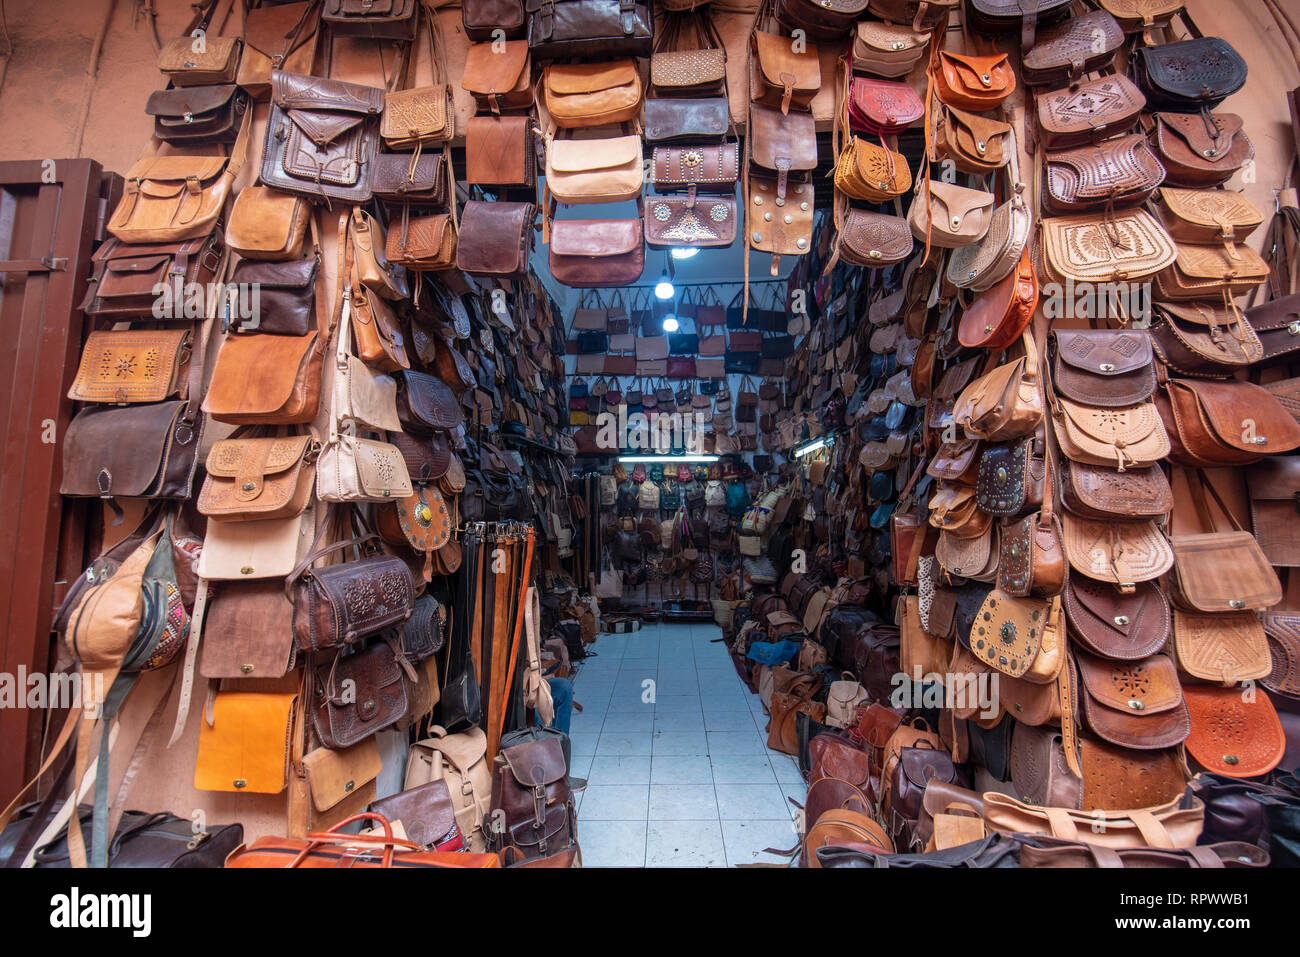 Nouveau Fait Main Commerce Équitable En Coton Doux Batman sac à main de Marrakech Maroc